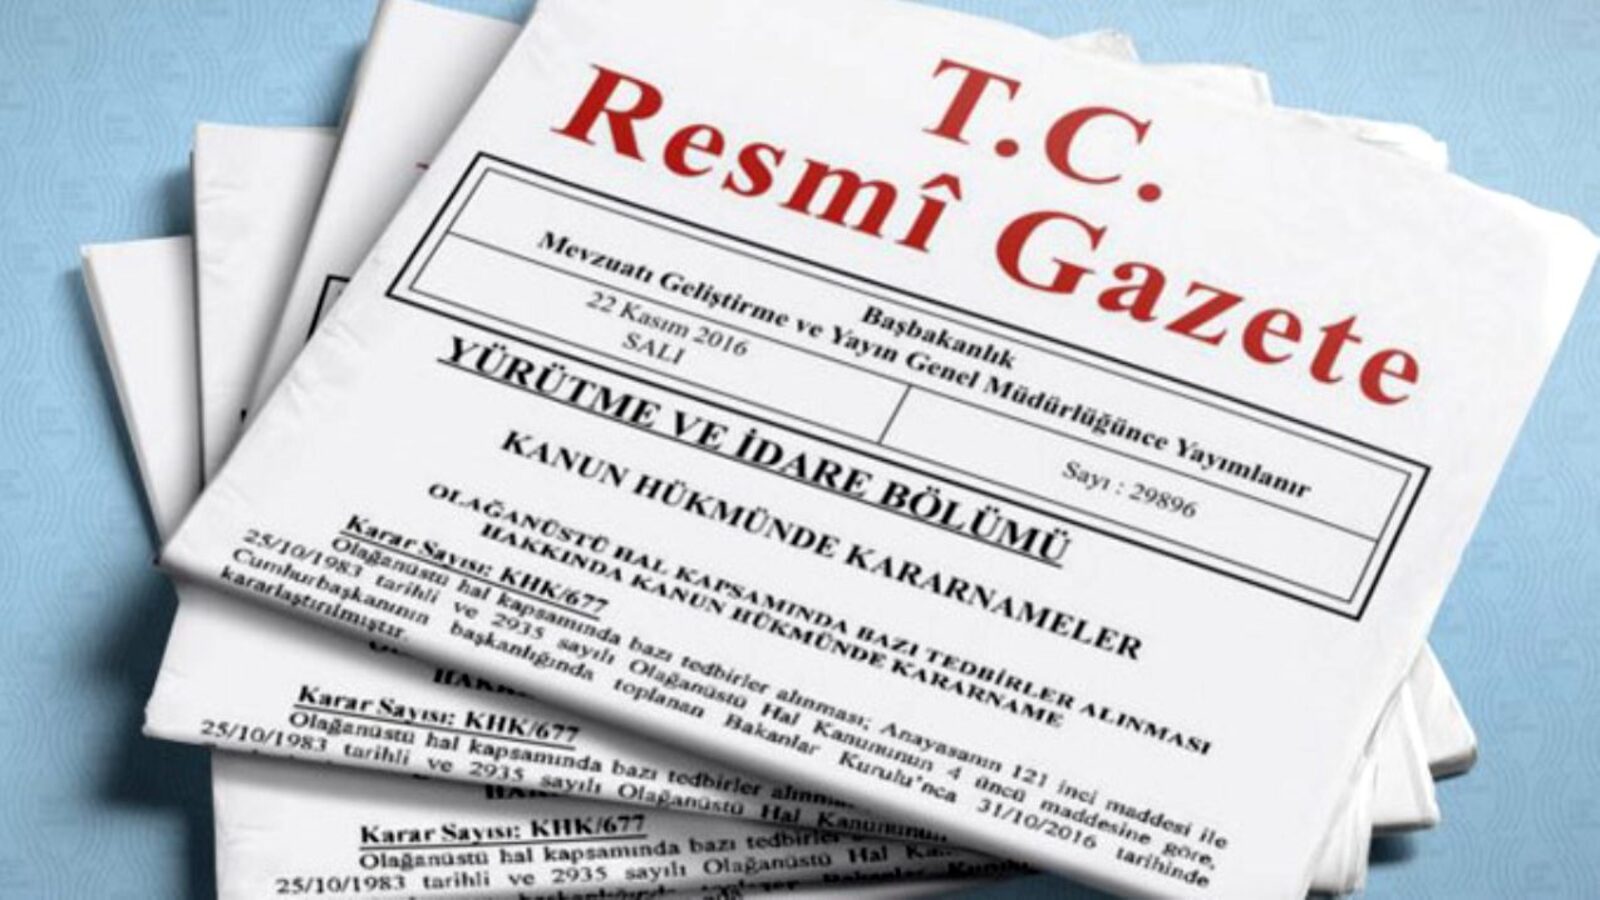 İstanbul Finans Merkezi'nin (İFM) yönetmeliği, Cumhurbaşkanı Recep Tayyip Erdoğan tarafından imzalanarak resmi gazetede yayımlandı.